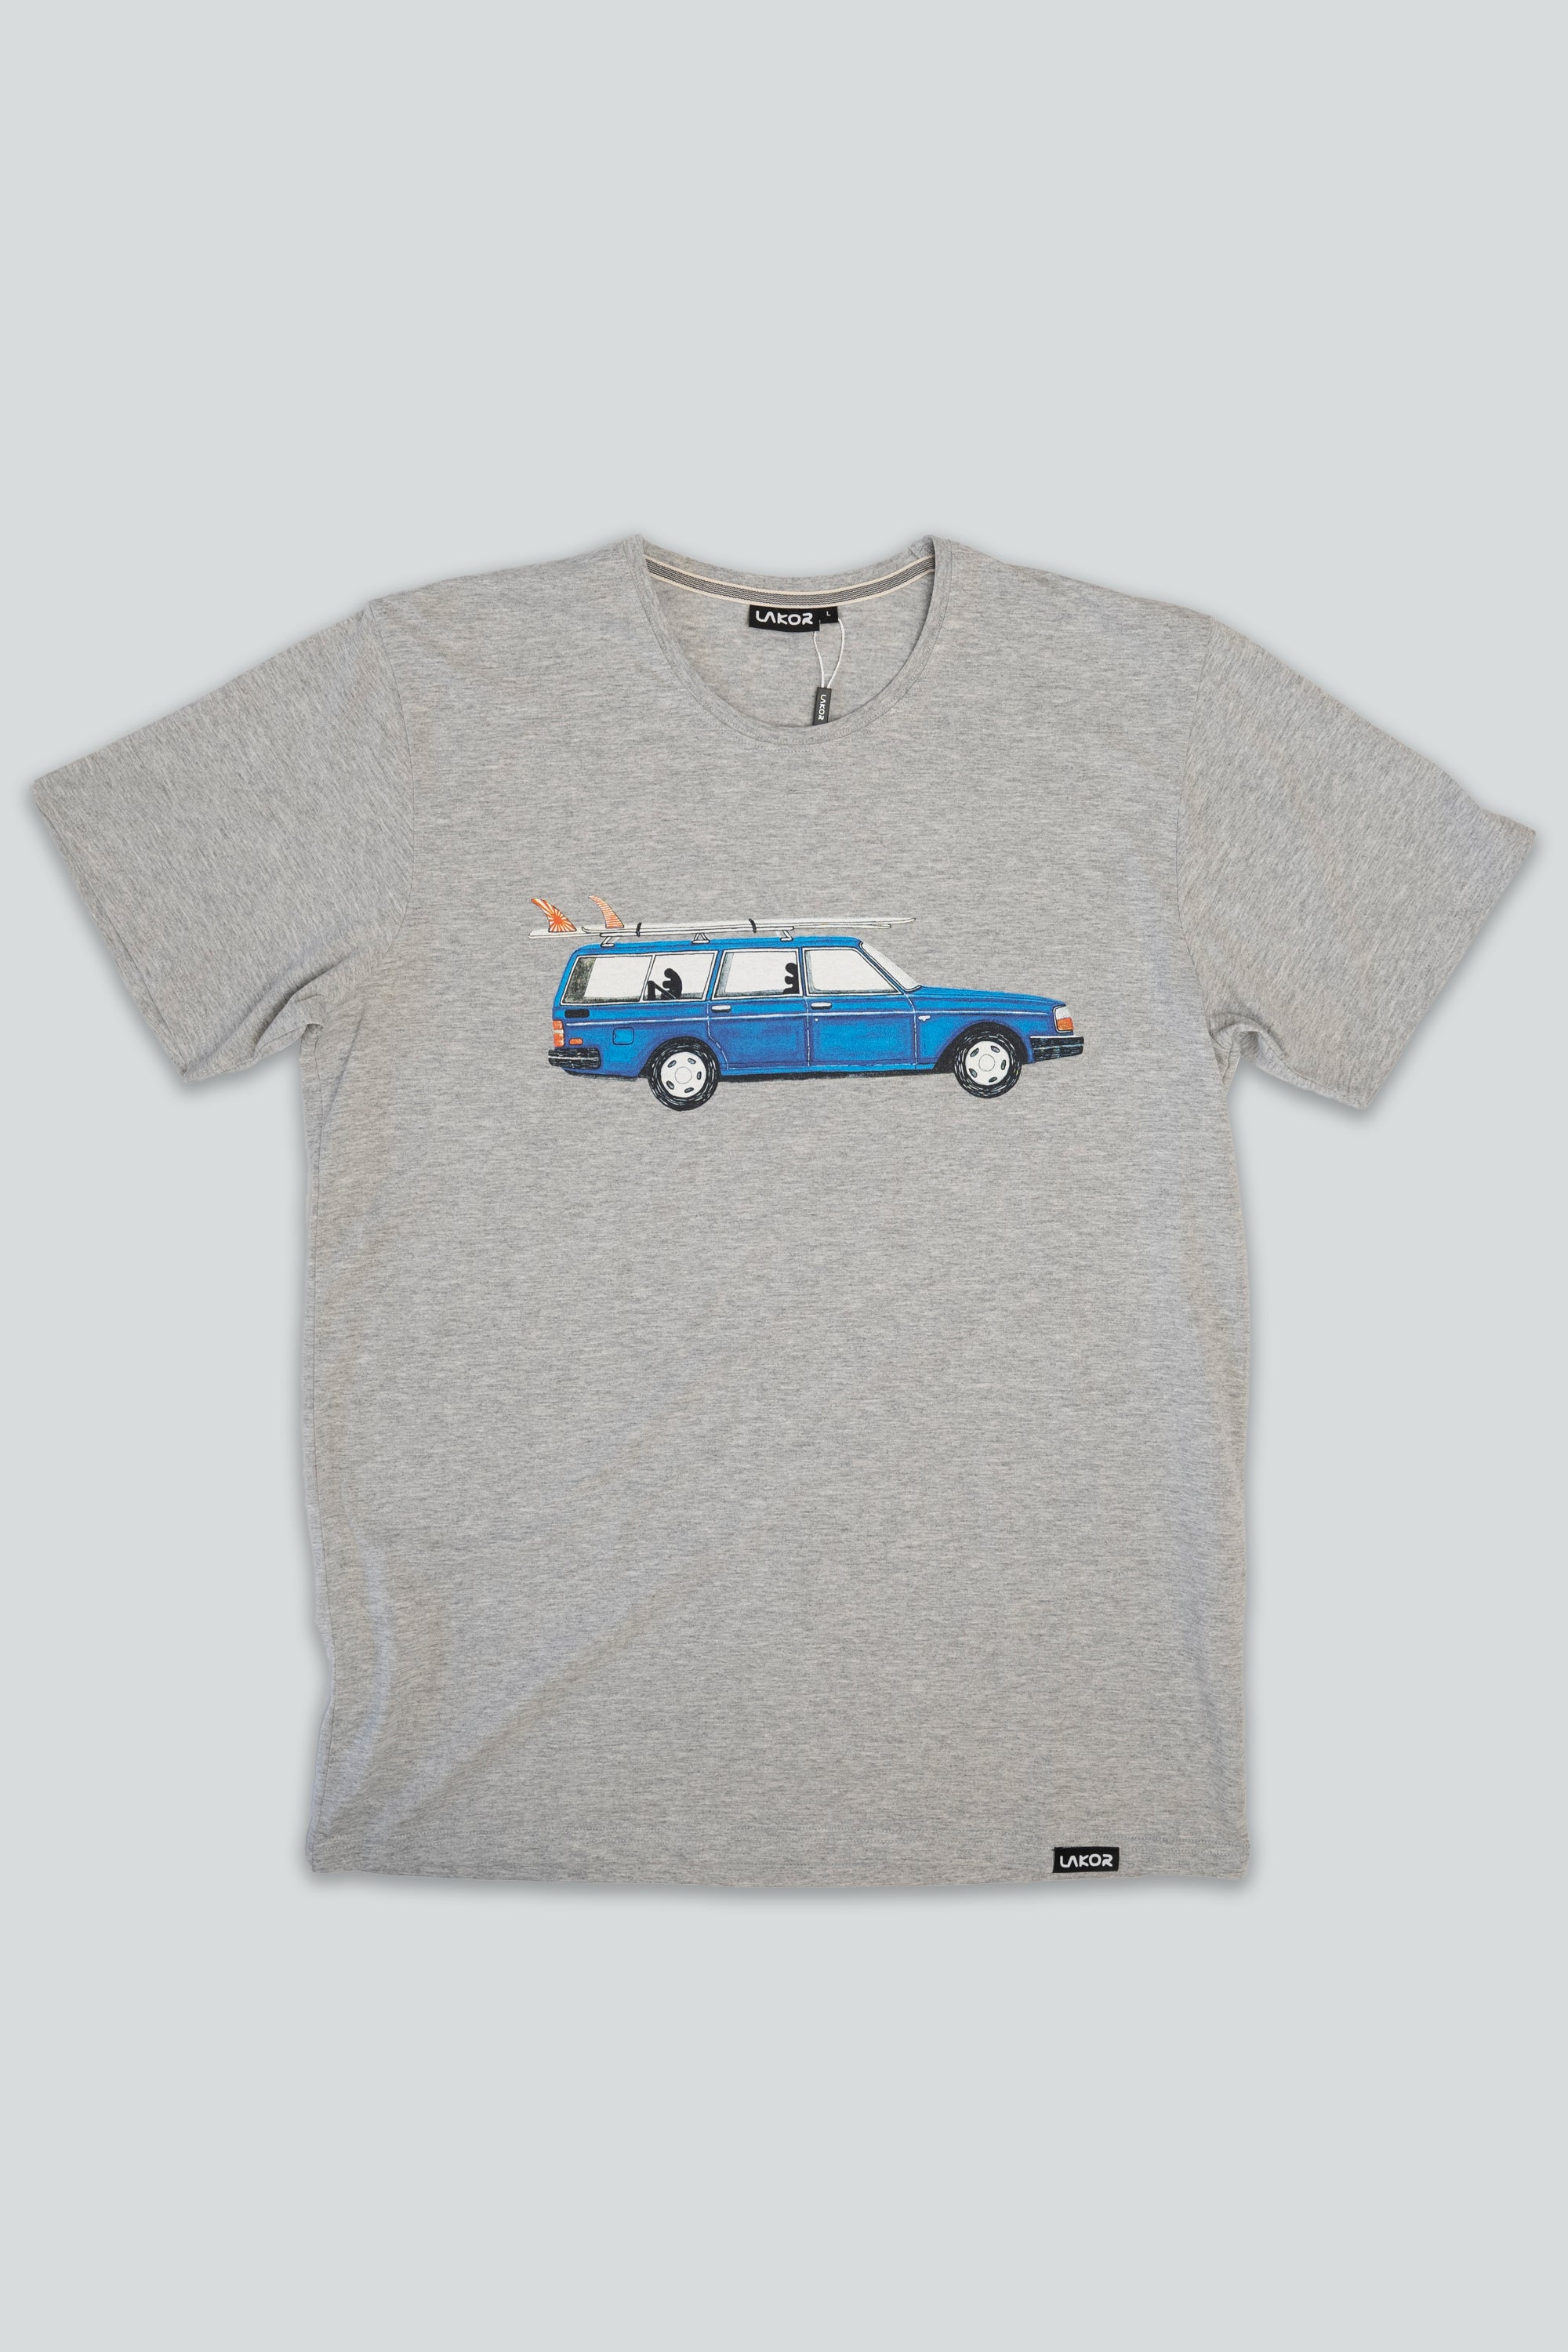 Getaway Car T-shirt (Light Grey)